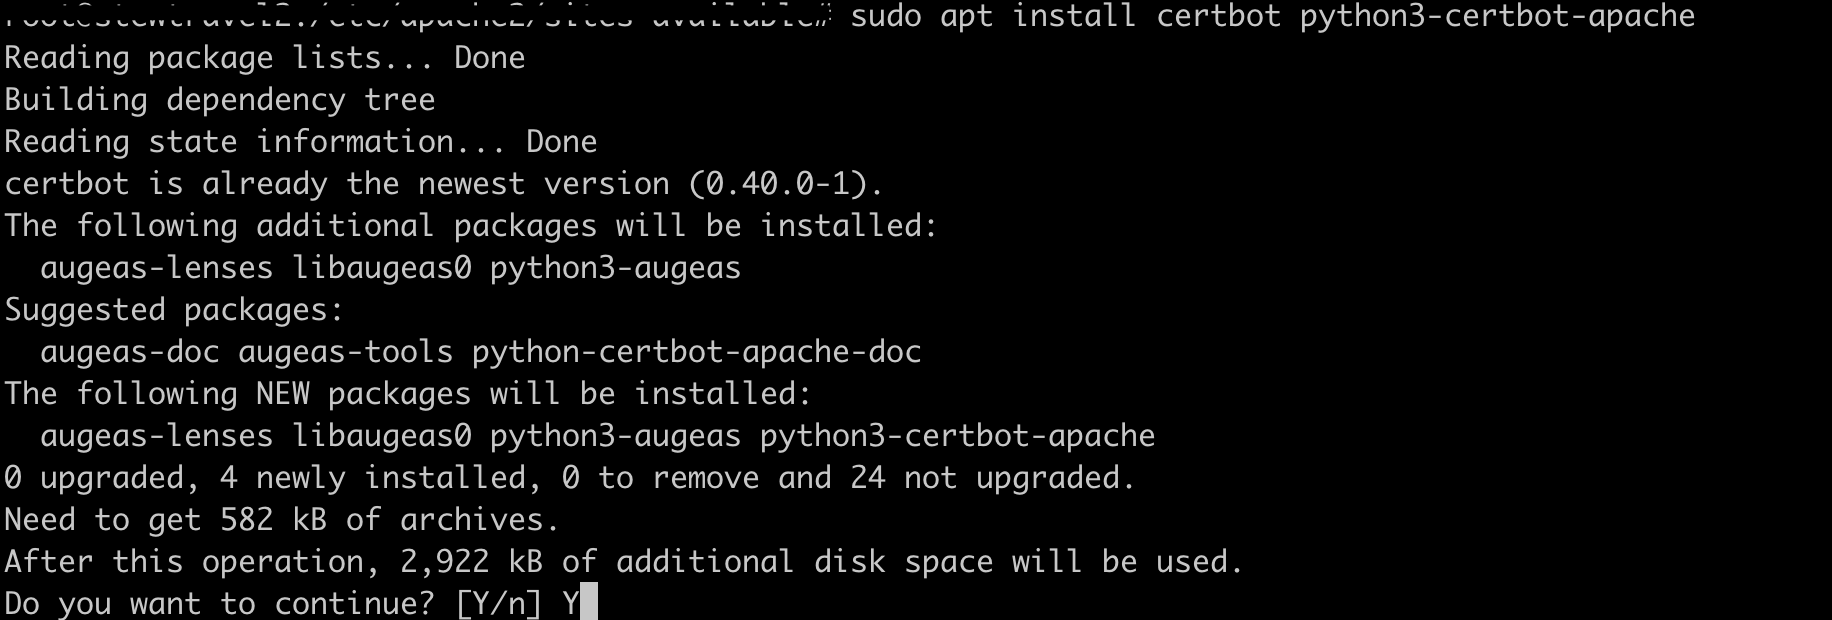 sudo apt install certbot python3-certbot-apache